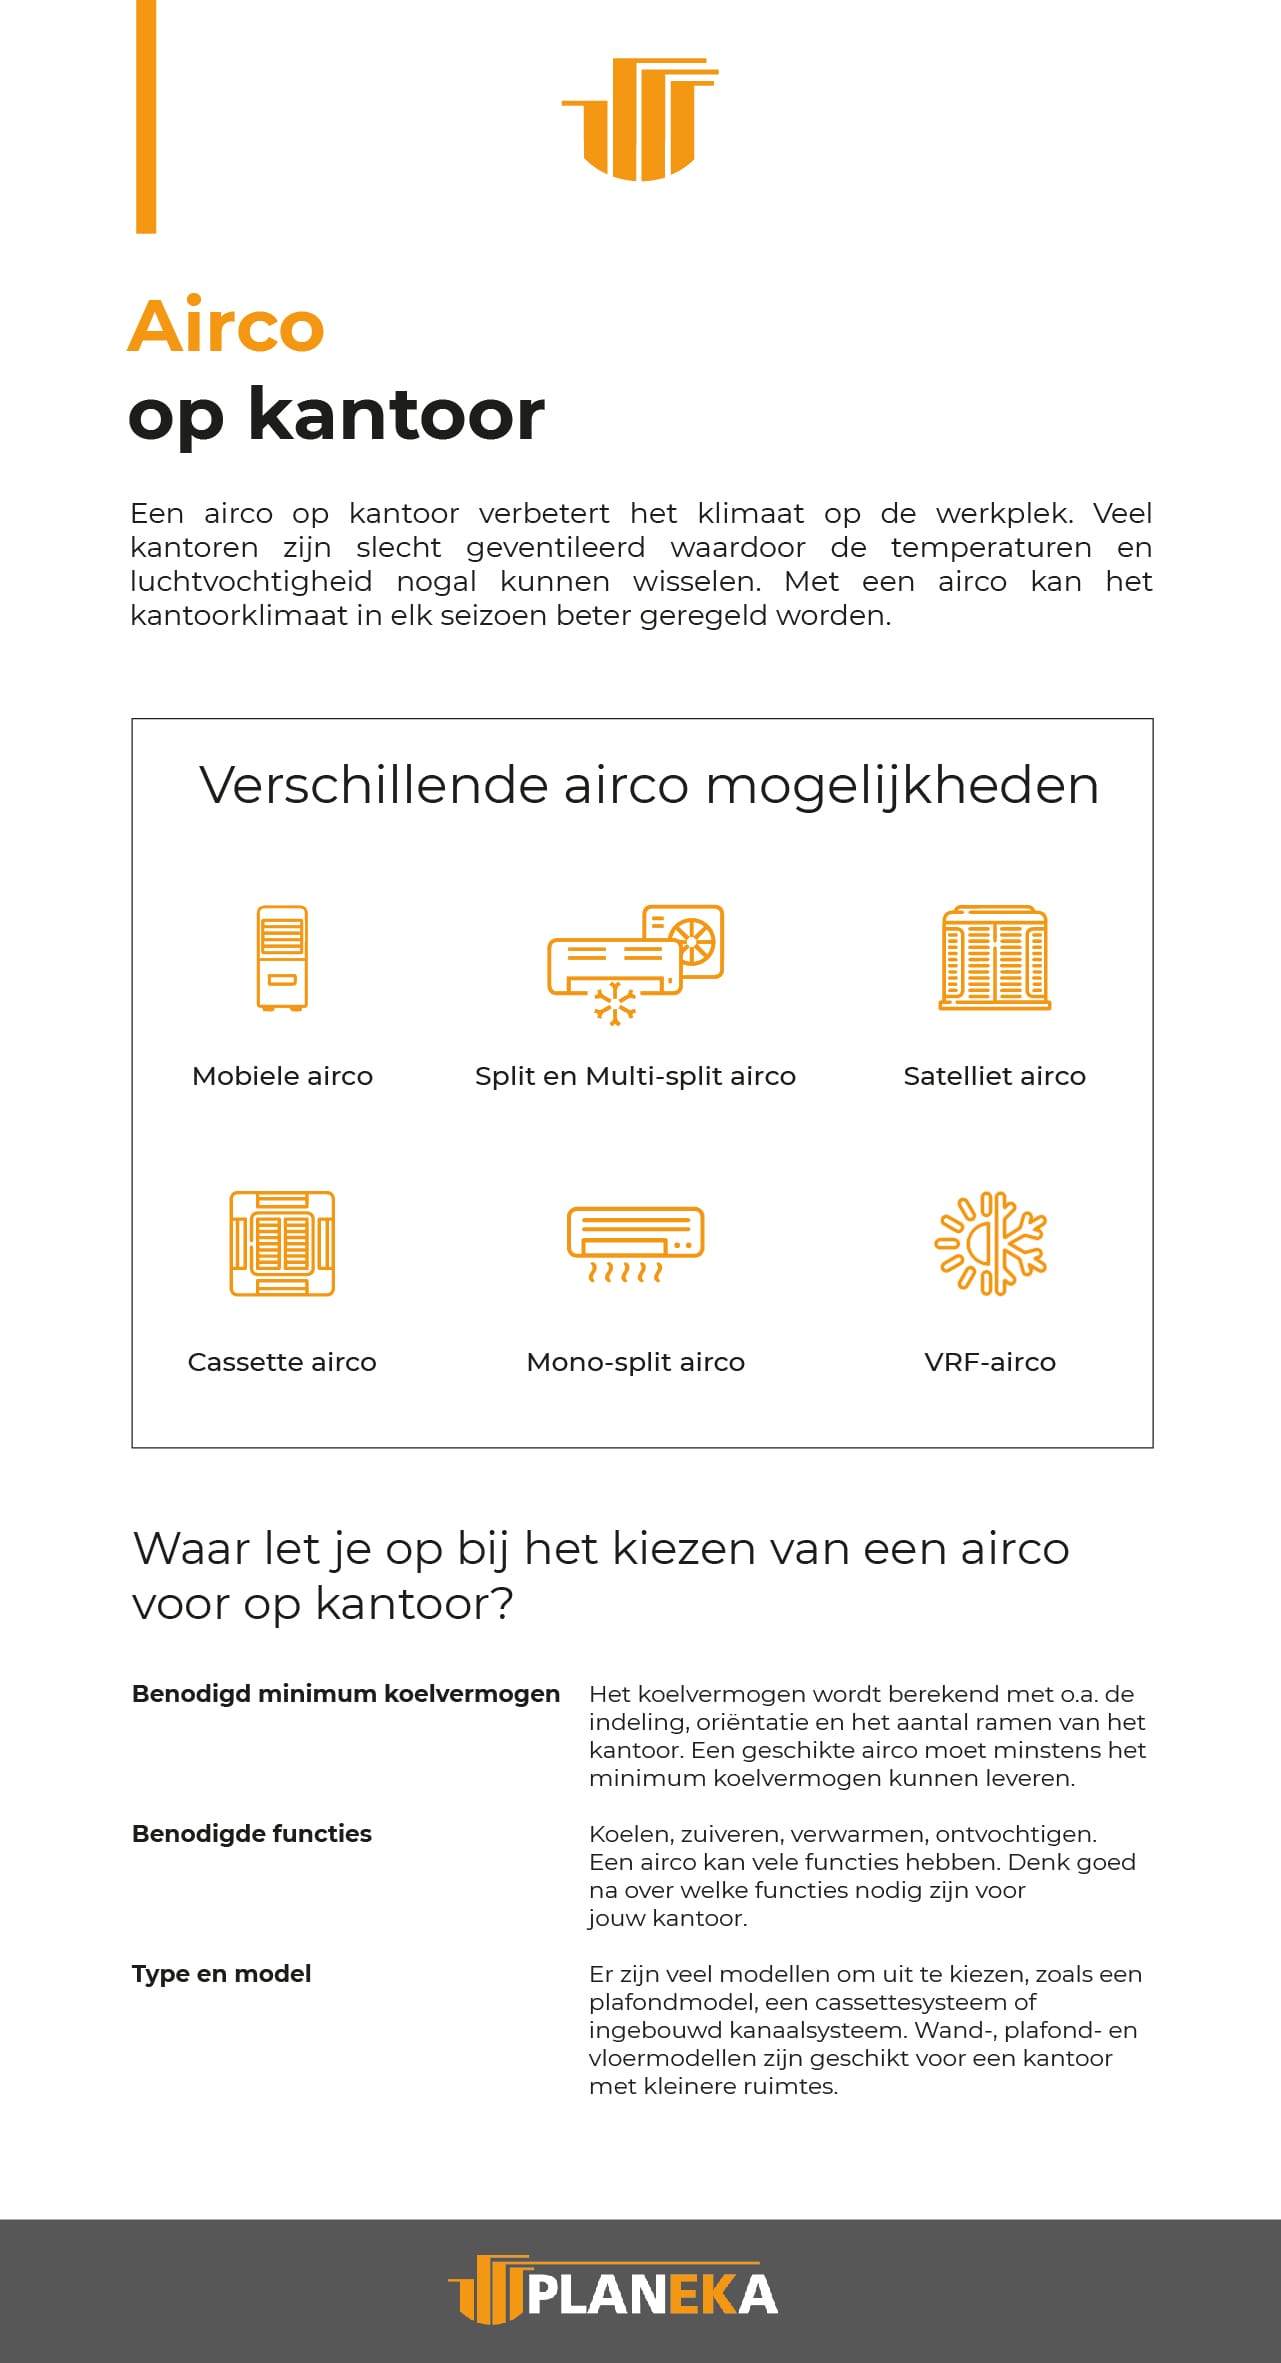 Airco op kantoor infographic